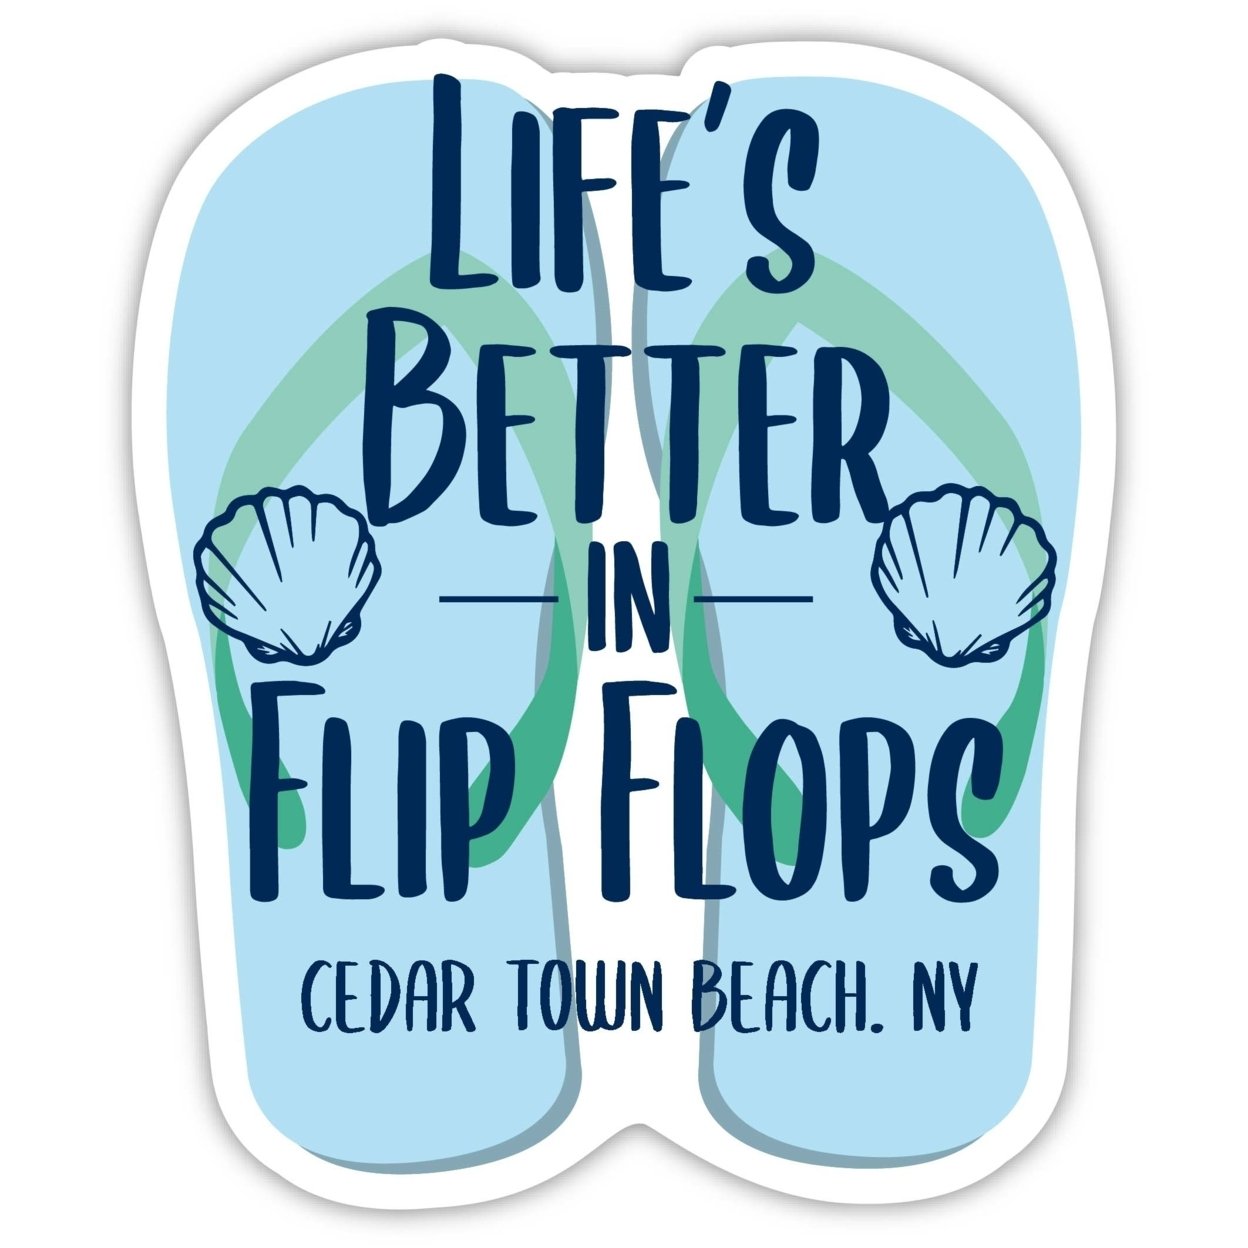 Cedar Town Beach New York Souvenir 4 Inch Vinyl Decal Sticker Flip Flop Design